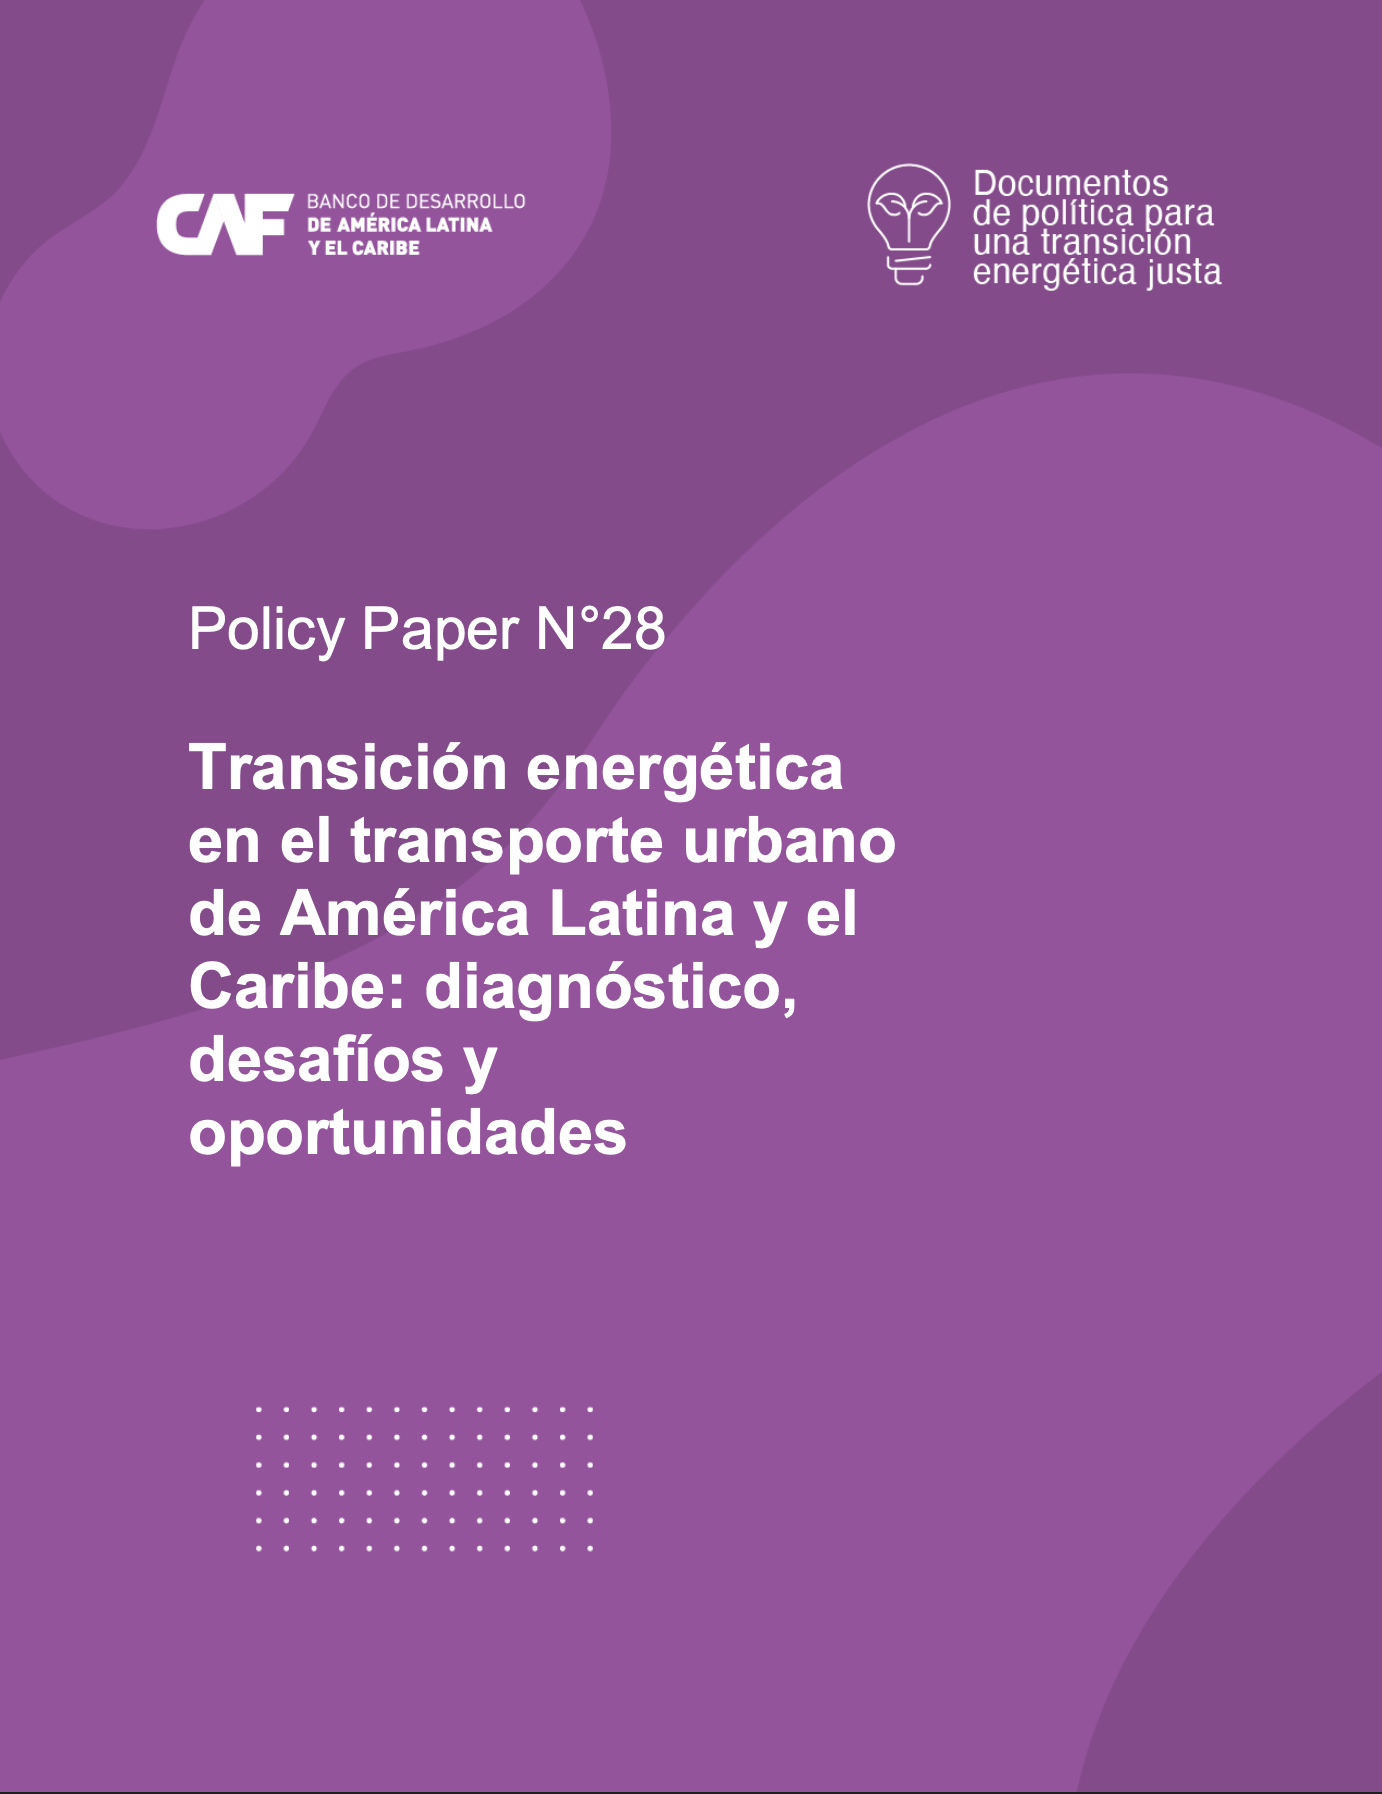 Transición energética en el transporte urbano de América Latina y el Caribe: diagnóstico, desafíos y oportunidades